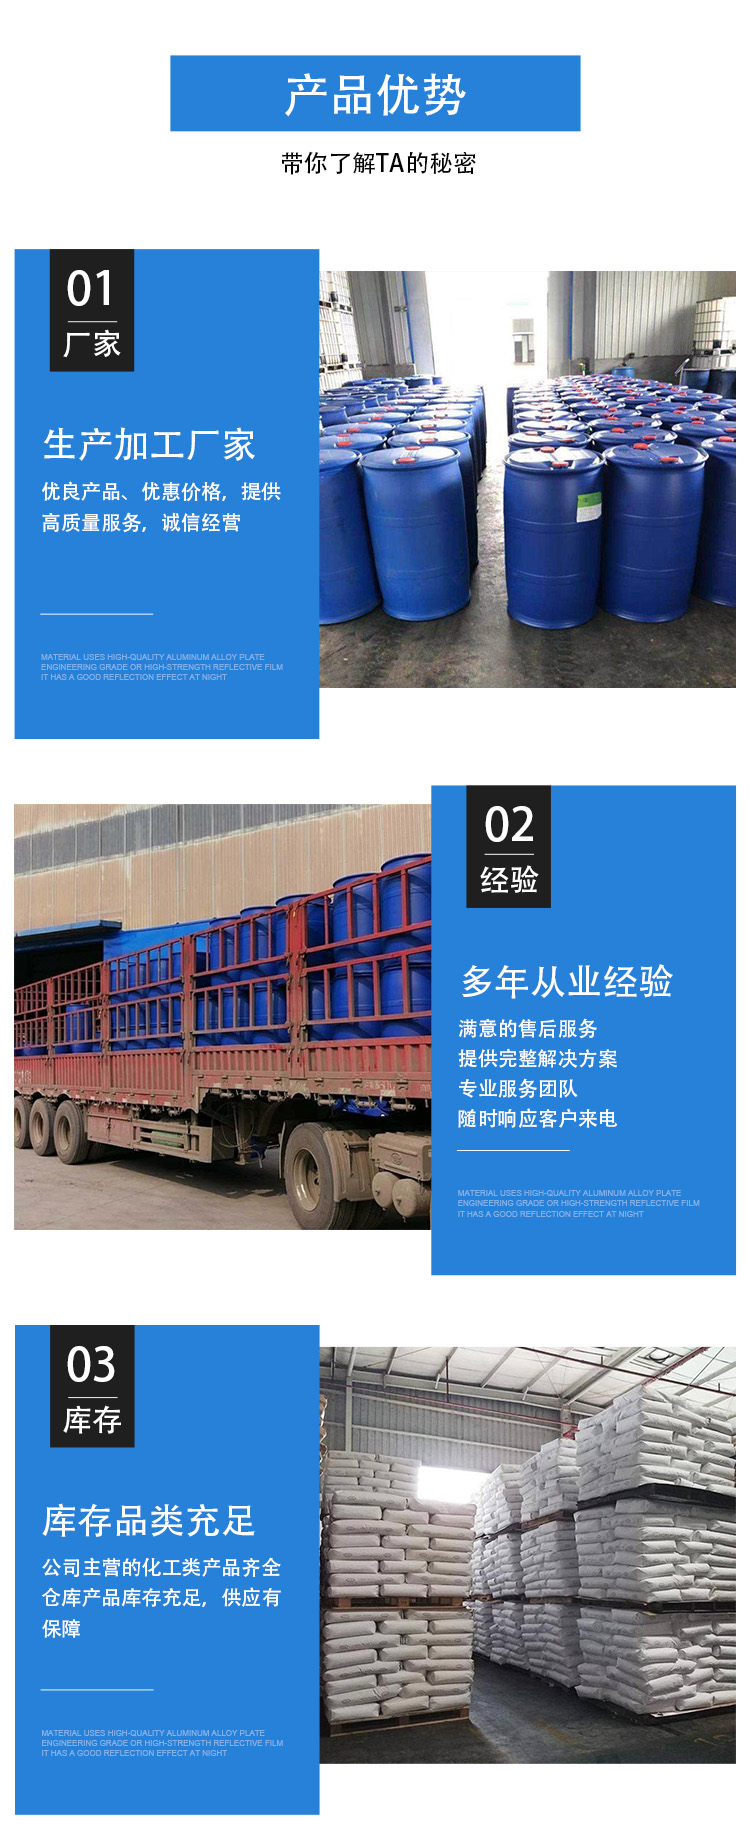 杭州工業級凝聚劑乙醇鈉供應商